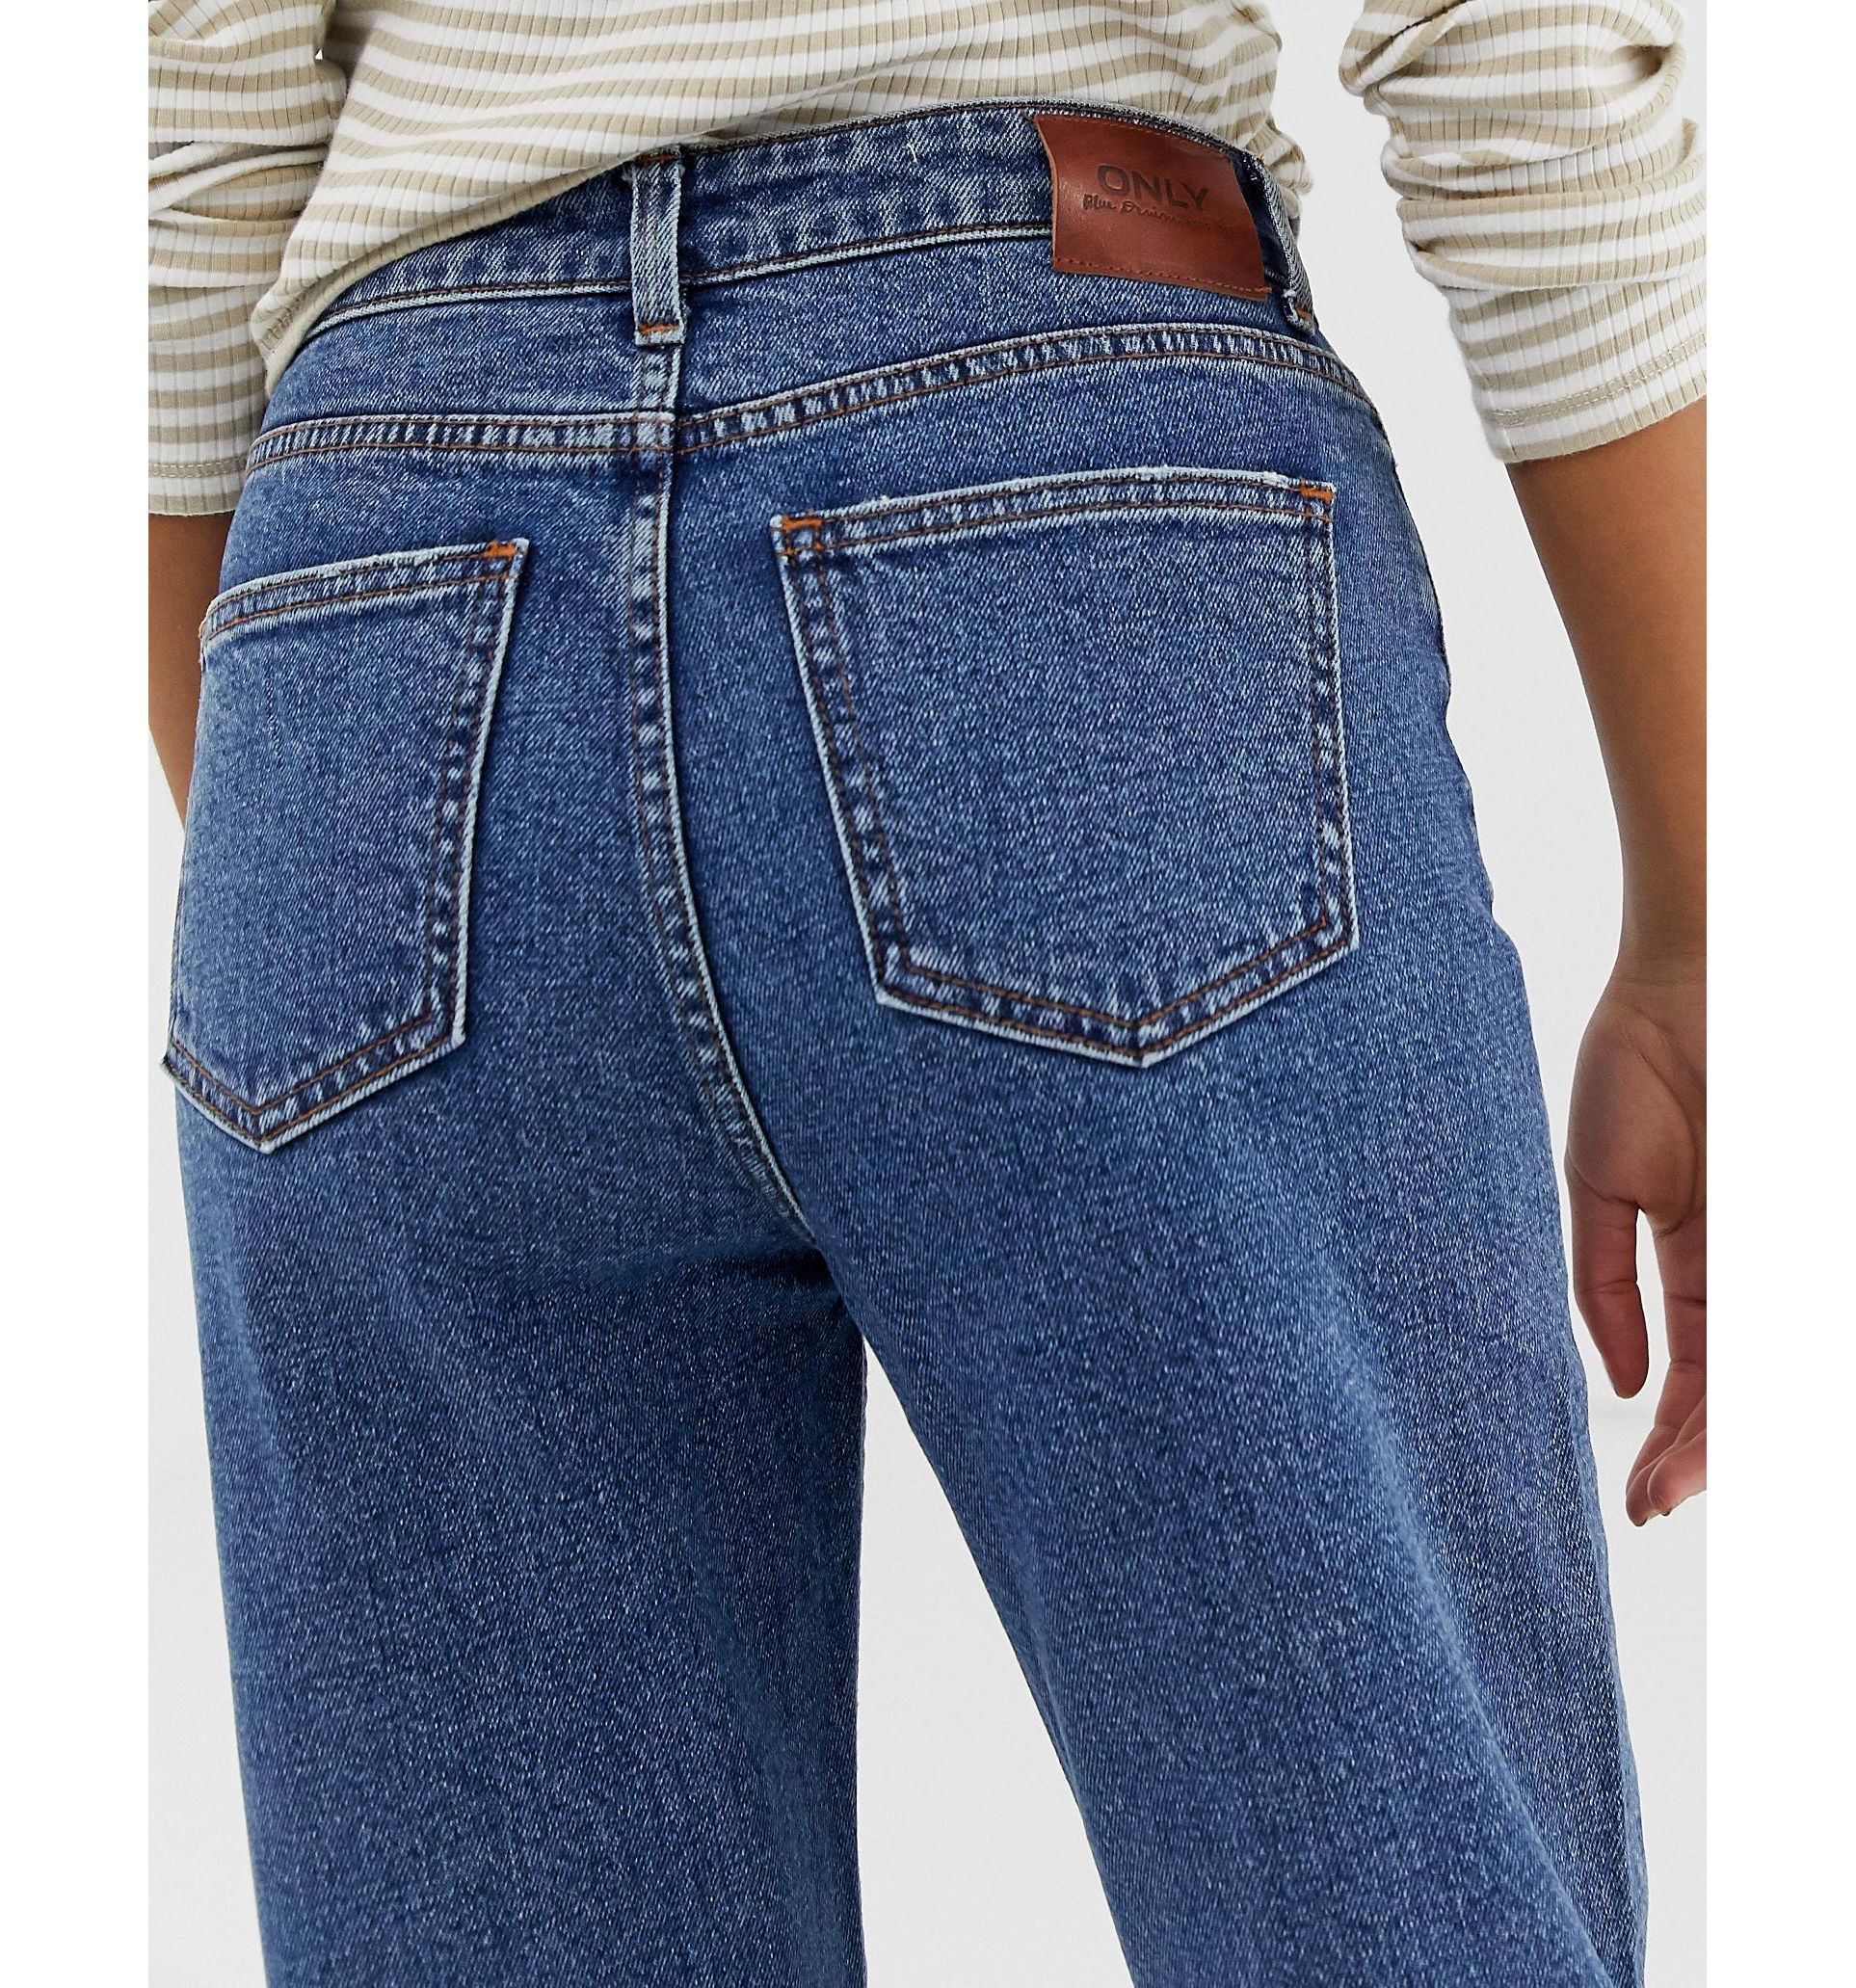 джинсы вид сзади фото